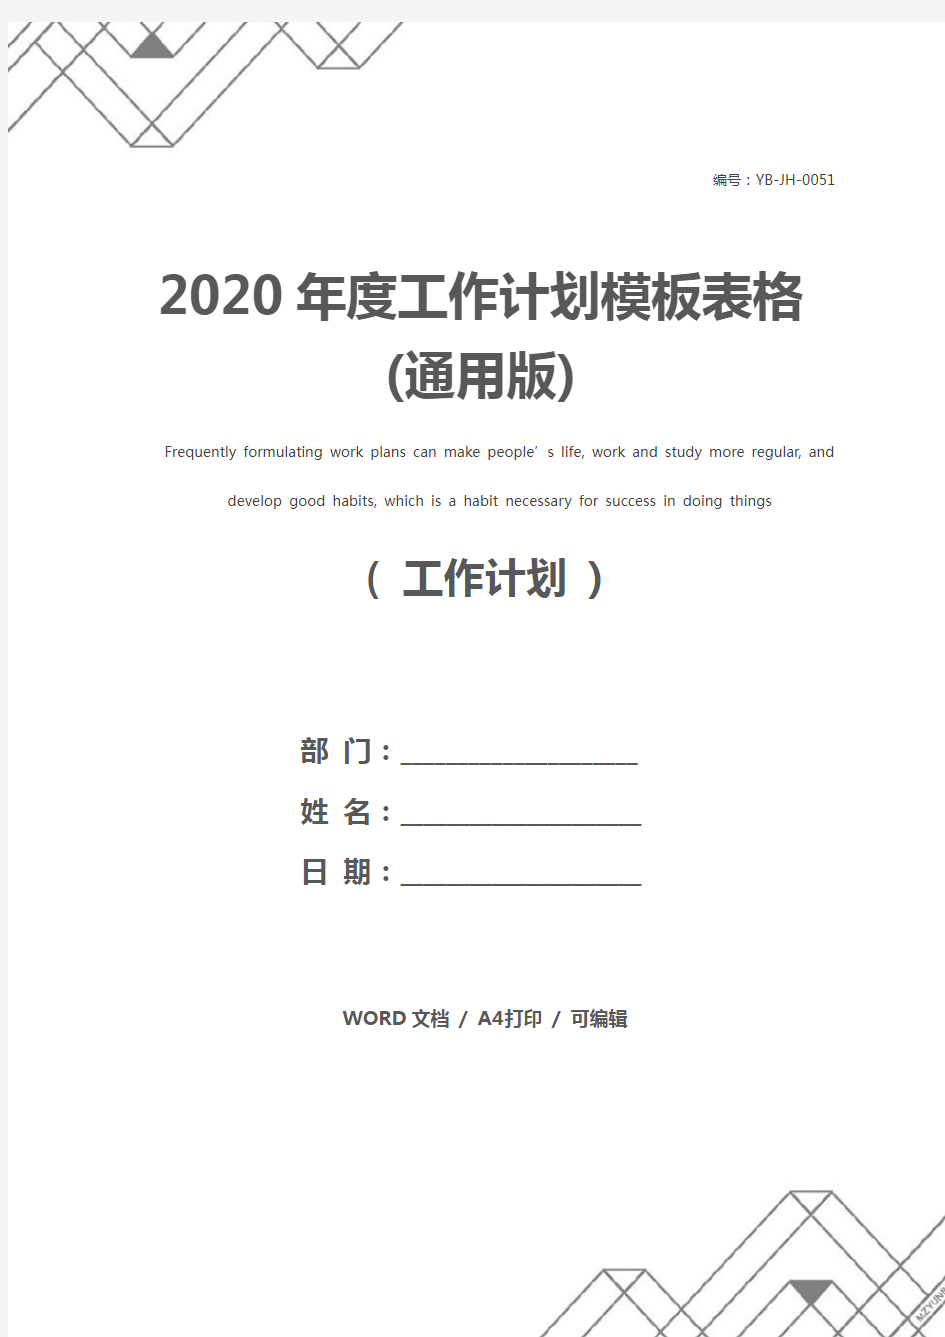 2020年度工作计划模板表格(通用版)